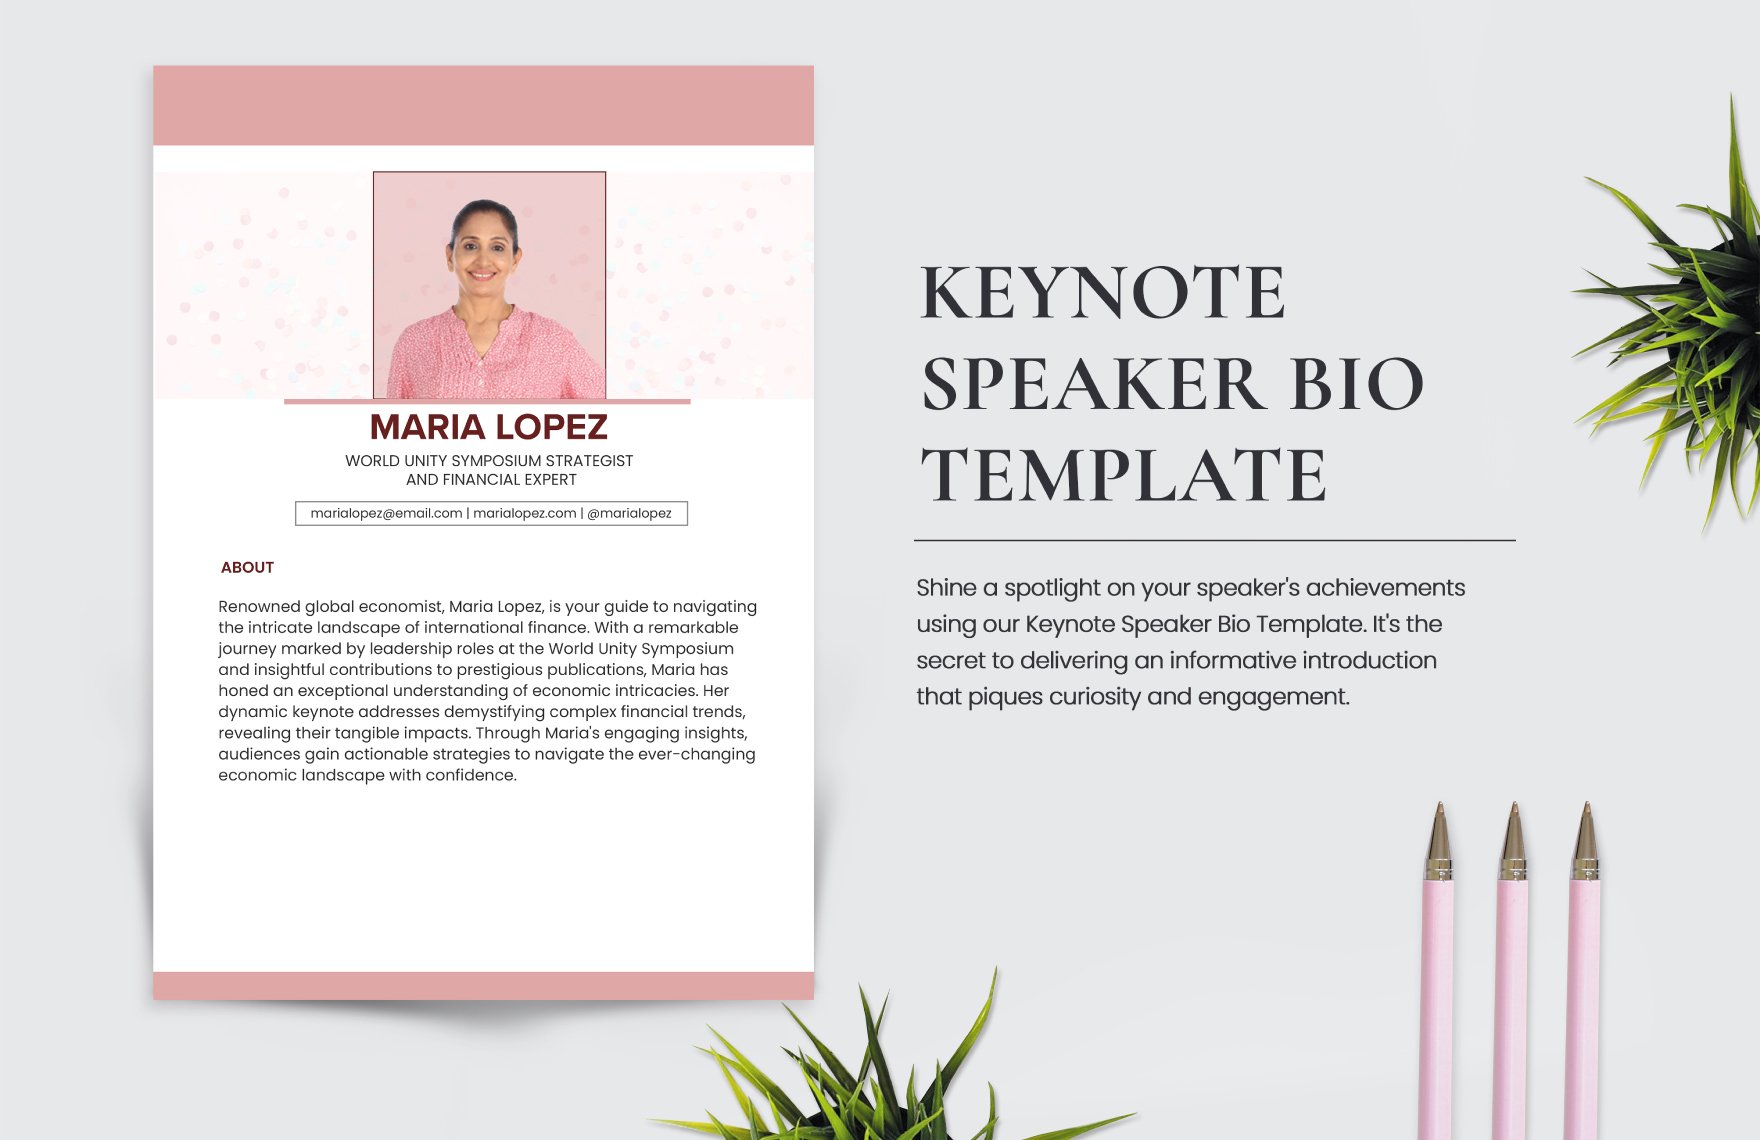 Keynote Speaker Bio Template in Word, Illustrator, PSD, PNG